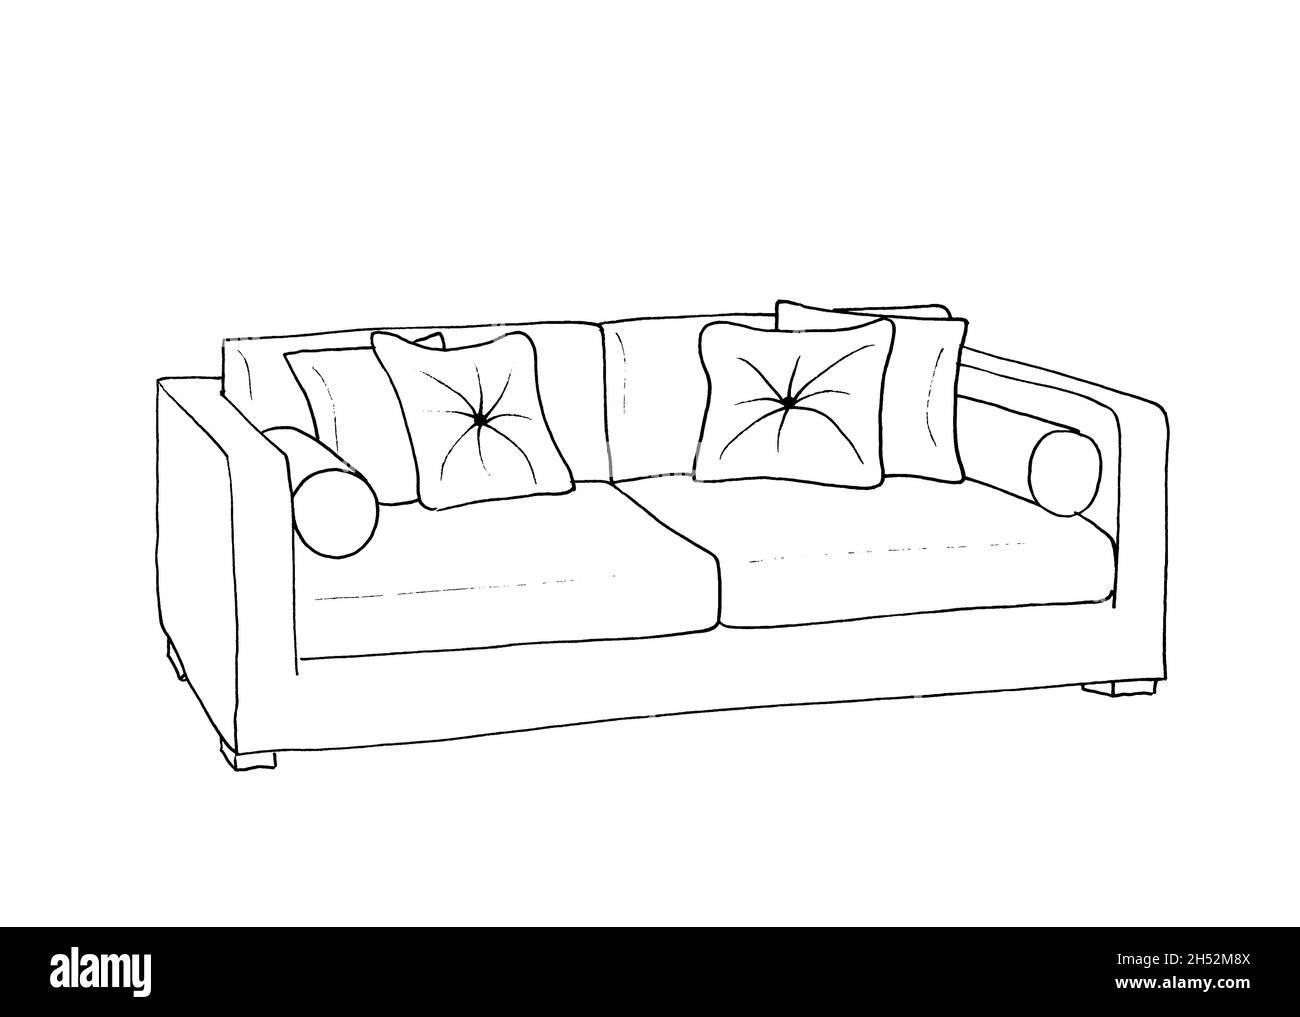 Disegno grafico di una stanza interna, divano, rivestimento Foto stock -  Alamy